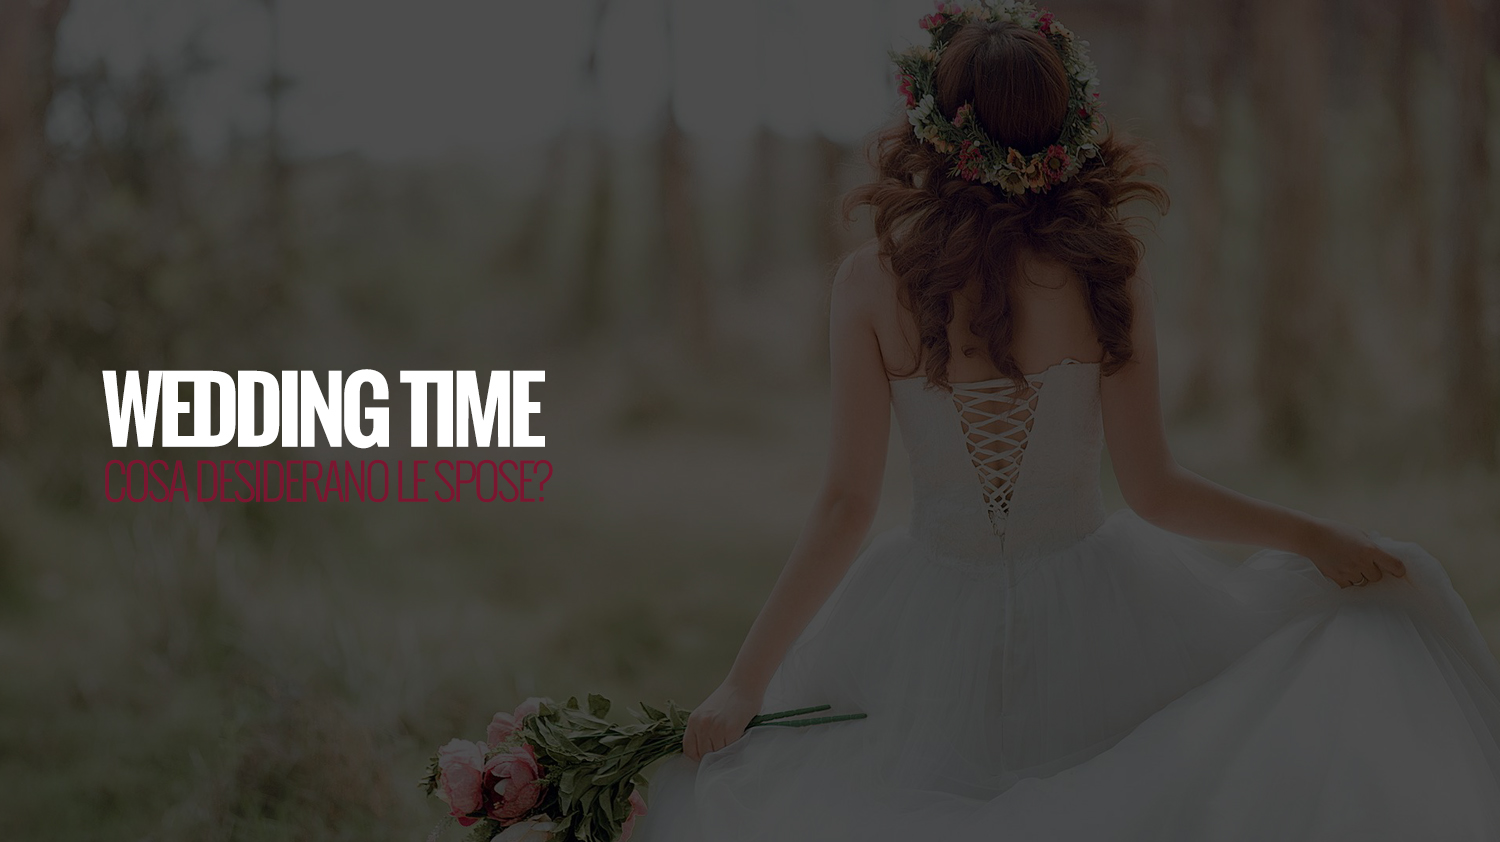 WEDDING TIME | cosa desiderano le spose?